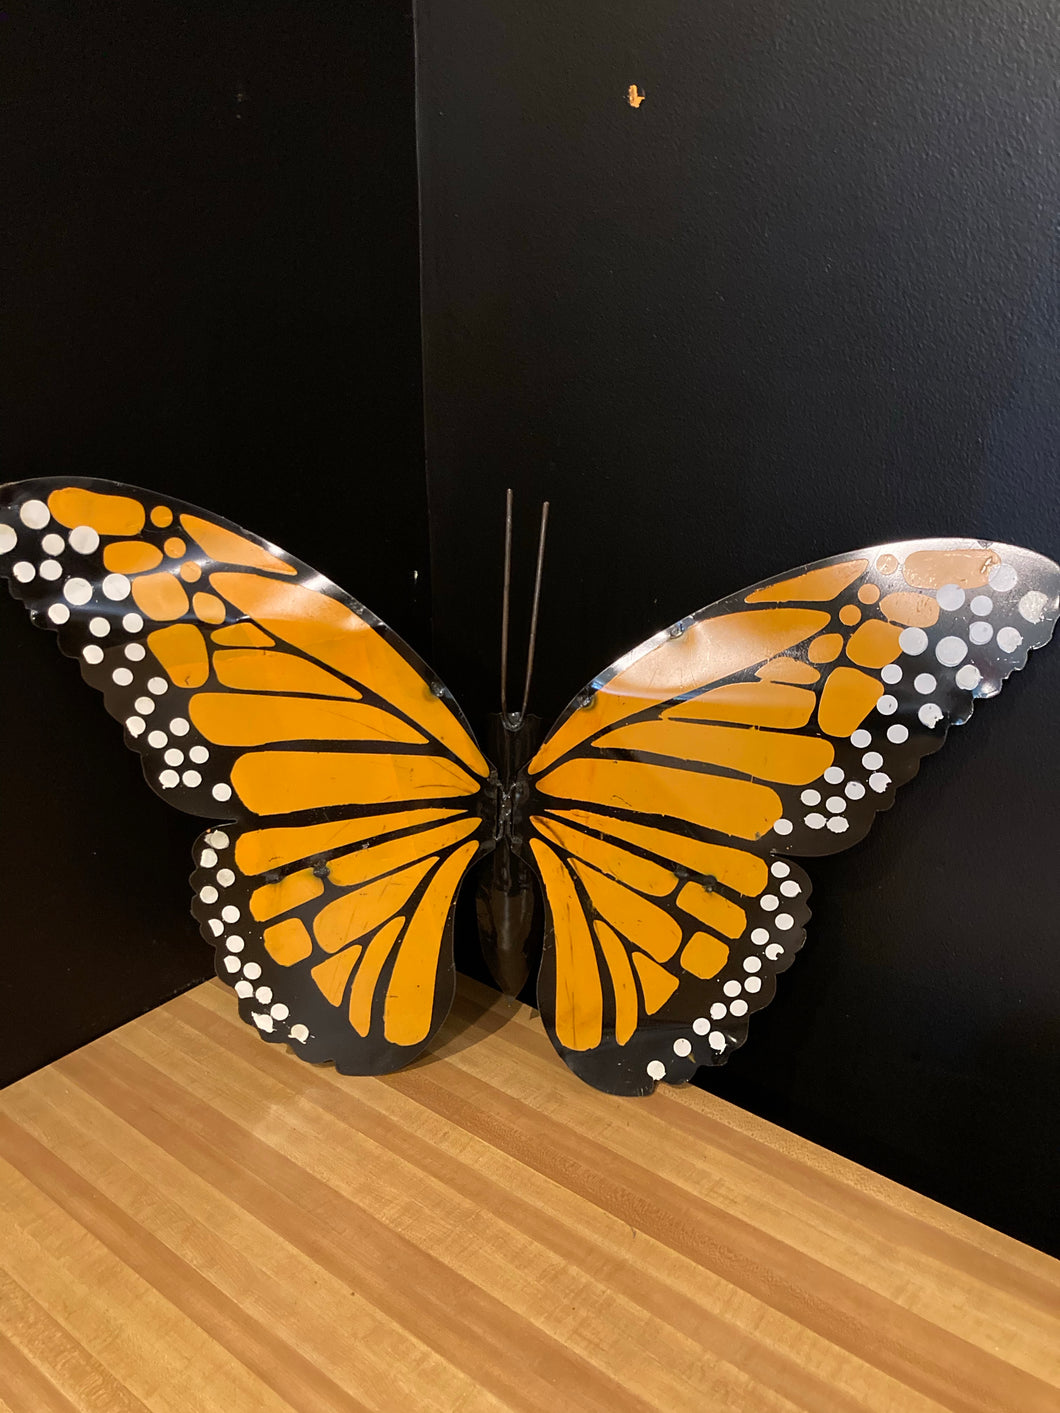 Large Monarch Butterfly 30” x 20” - Metal Yard Art